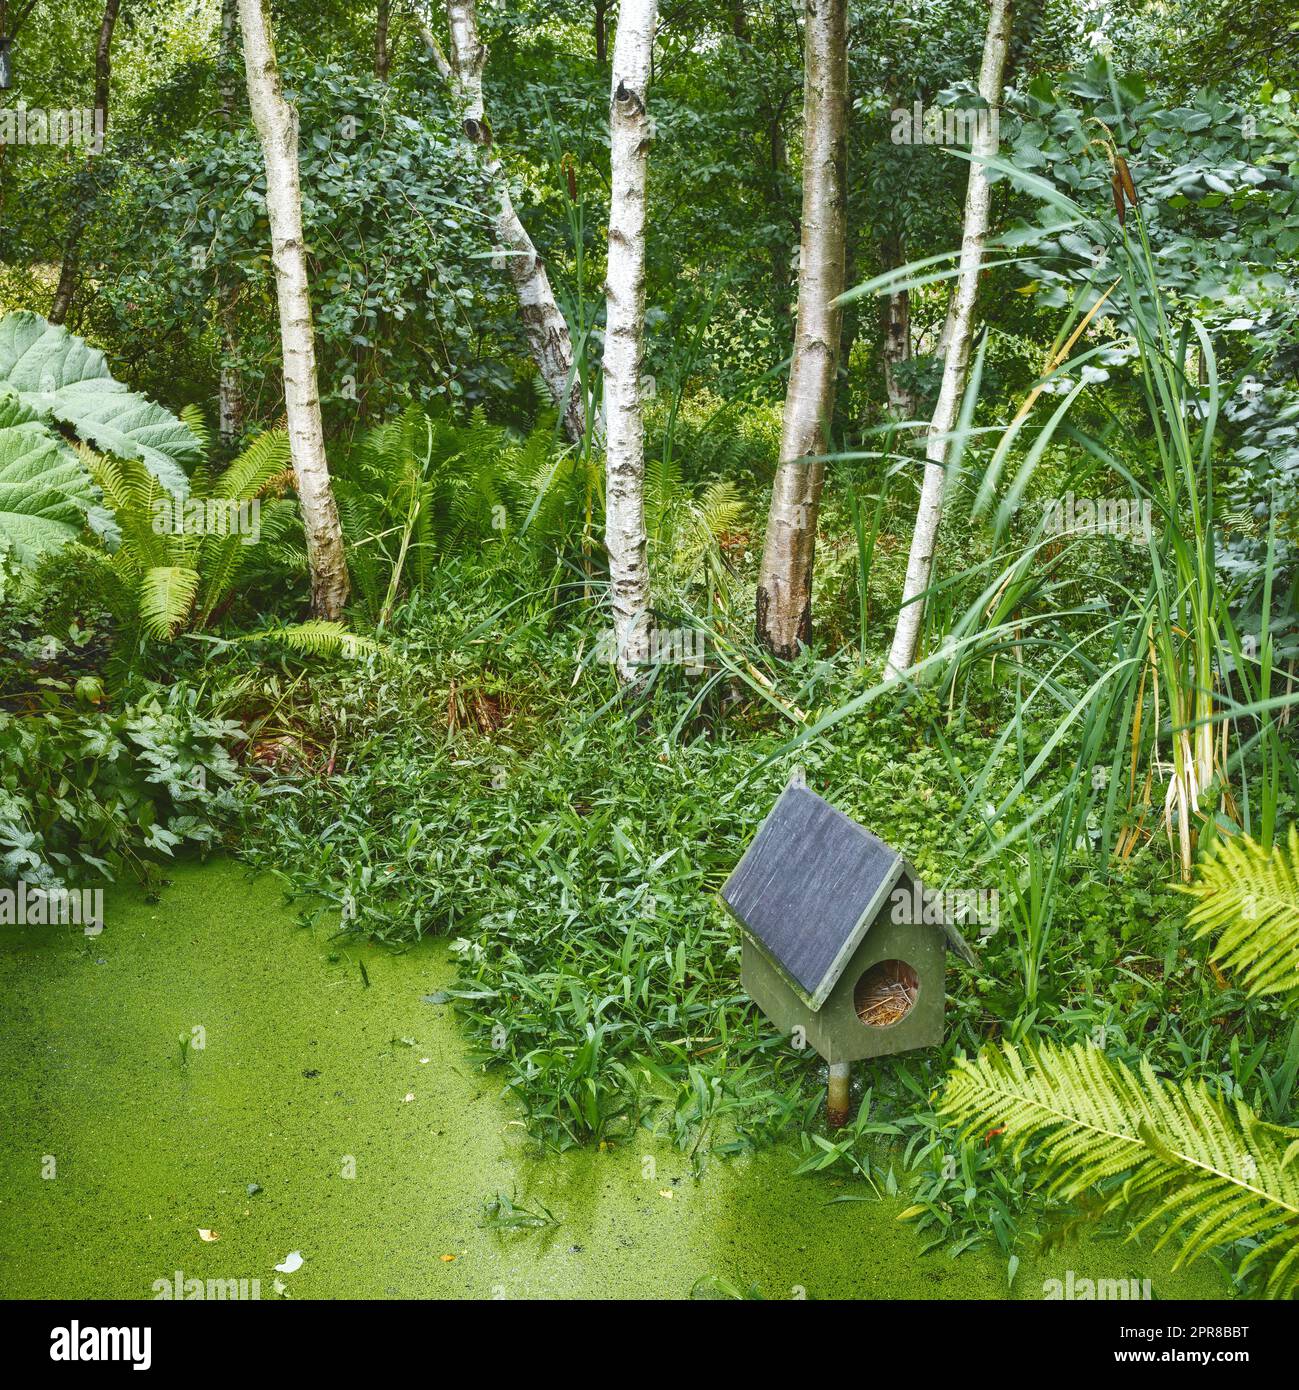 Un étang de forêt tropicale verte avec une maison d'oiseaux. Petite fleur d'algues fraîches entourée de bois de bouleau et de plantes vertes. Photo de forêt après la pluie. Petite maison d'oiseaux sur le dessus de l'eau avec de l'herbe autour. Banque D'Images